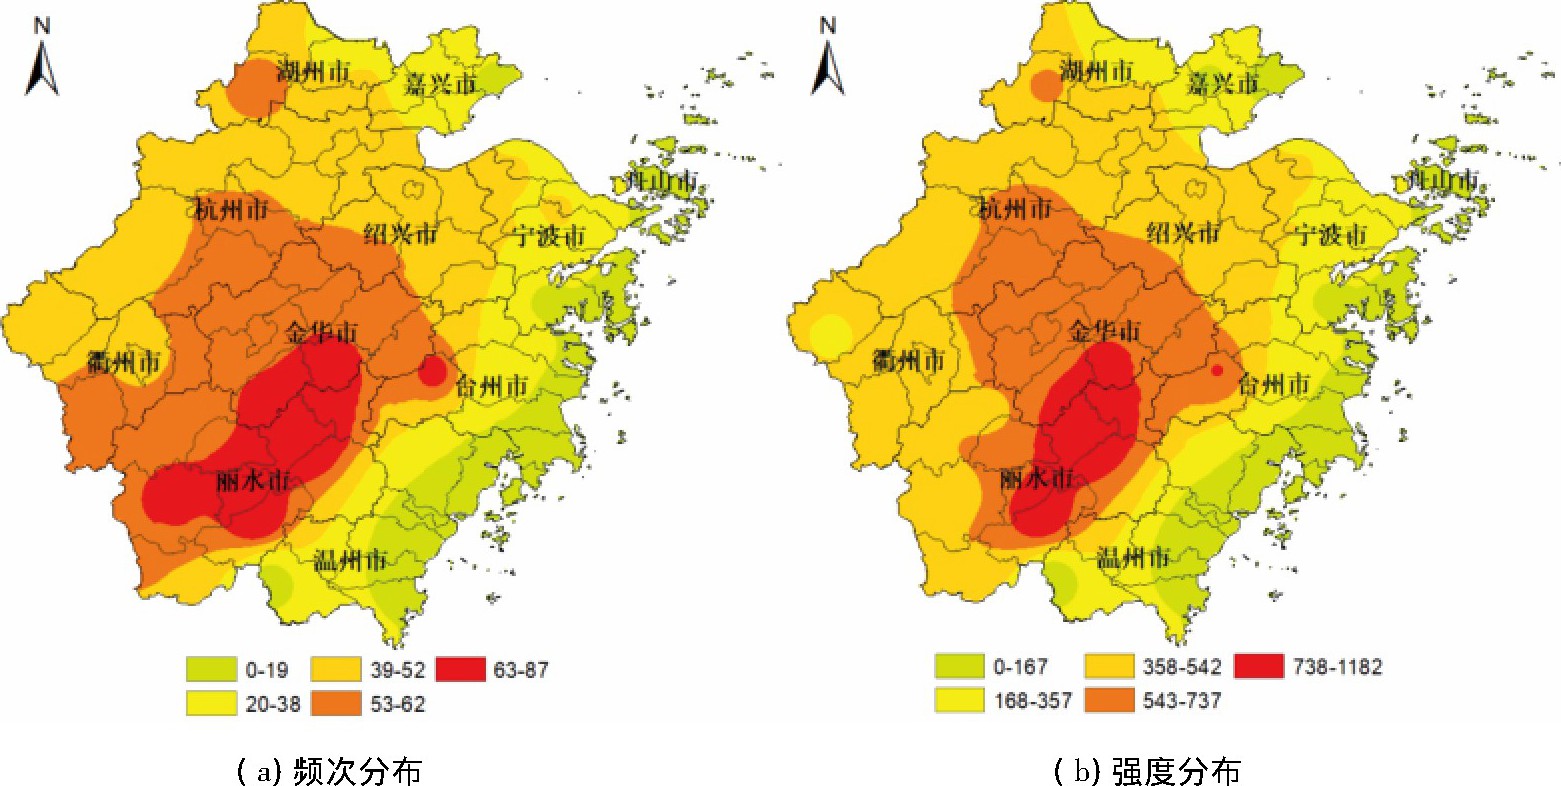 ͼ2 1961-2010㽭ʡȺƵǿȷֲͼFig.2 Distribution of total frequency and total intensity of high temperature events in Zhejiang province from 1961 to 2010